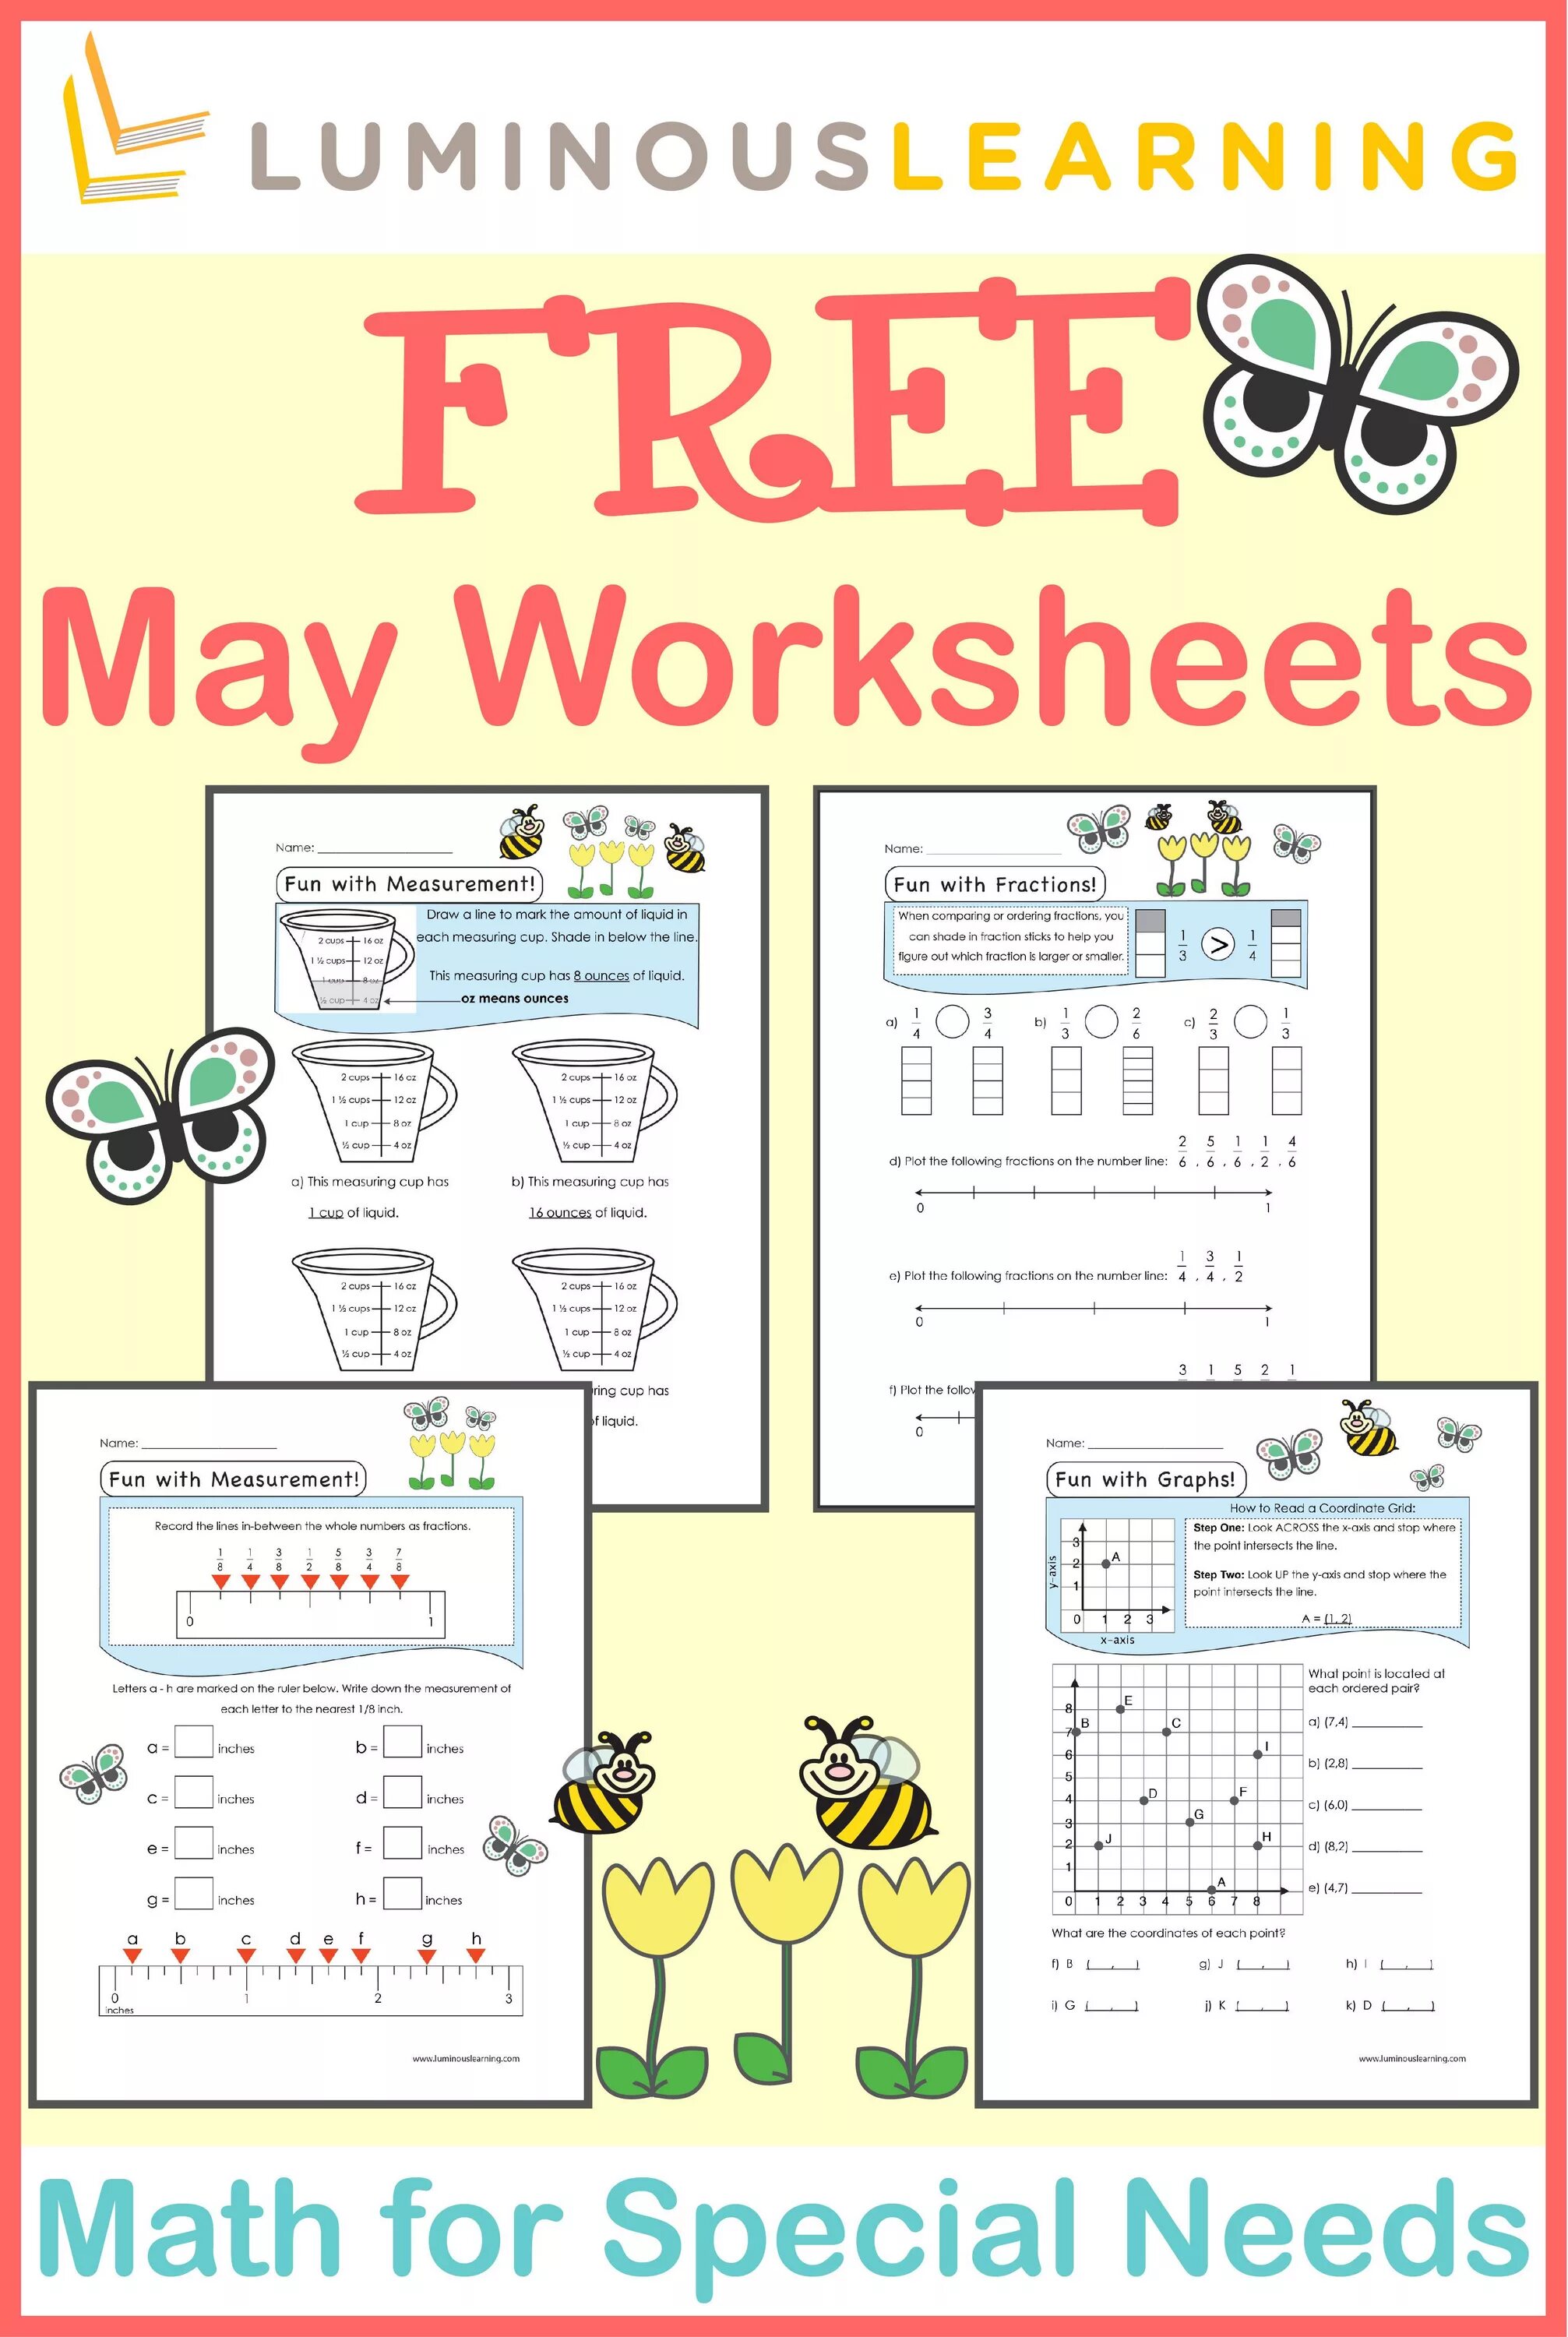 May worksheets. May May not Worksheets. May might Worksheets. May or May Worksheets. Worksheets with May.